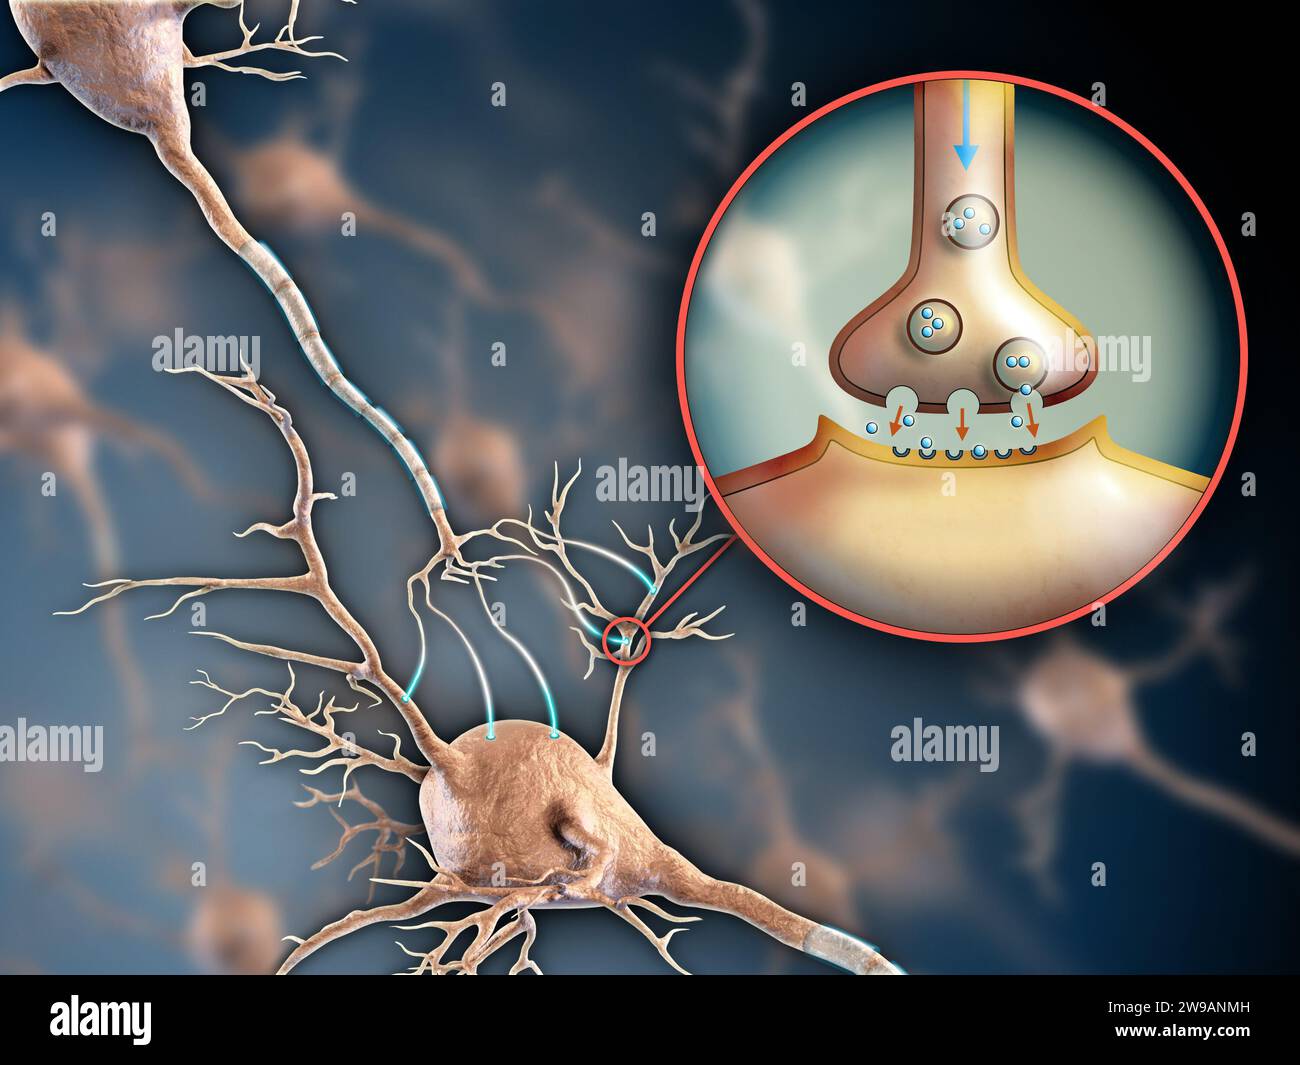 Zwei Neuronen, die sich durch elektrochemische Transmissionen verbinden. Digitale Illustration. Stockfoto